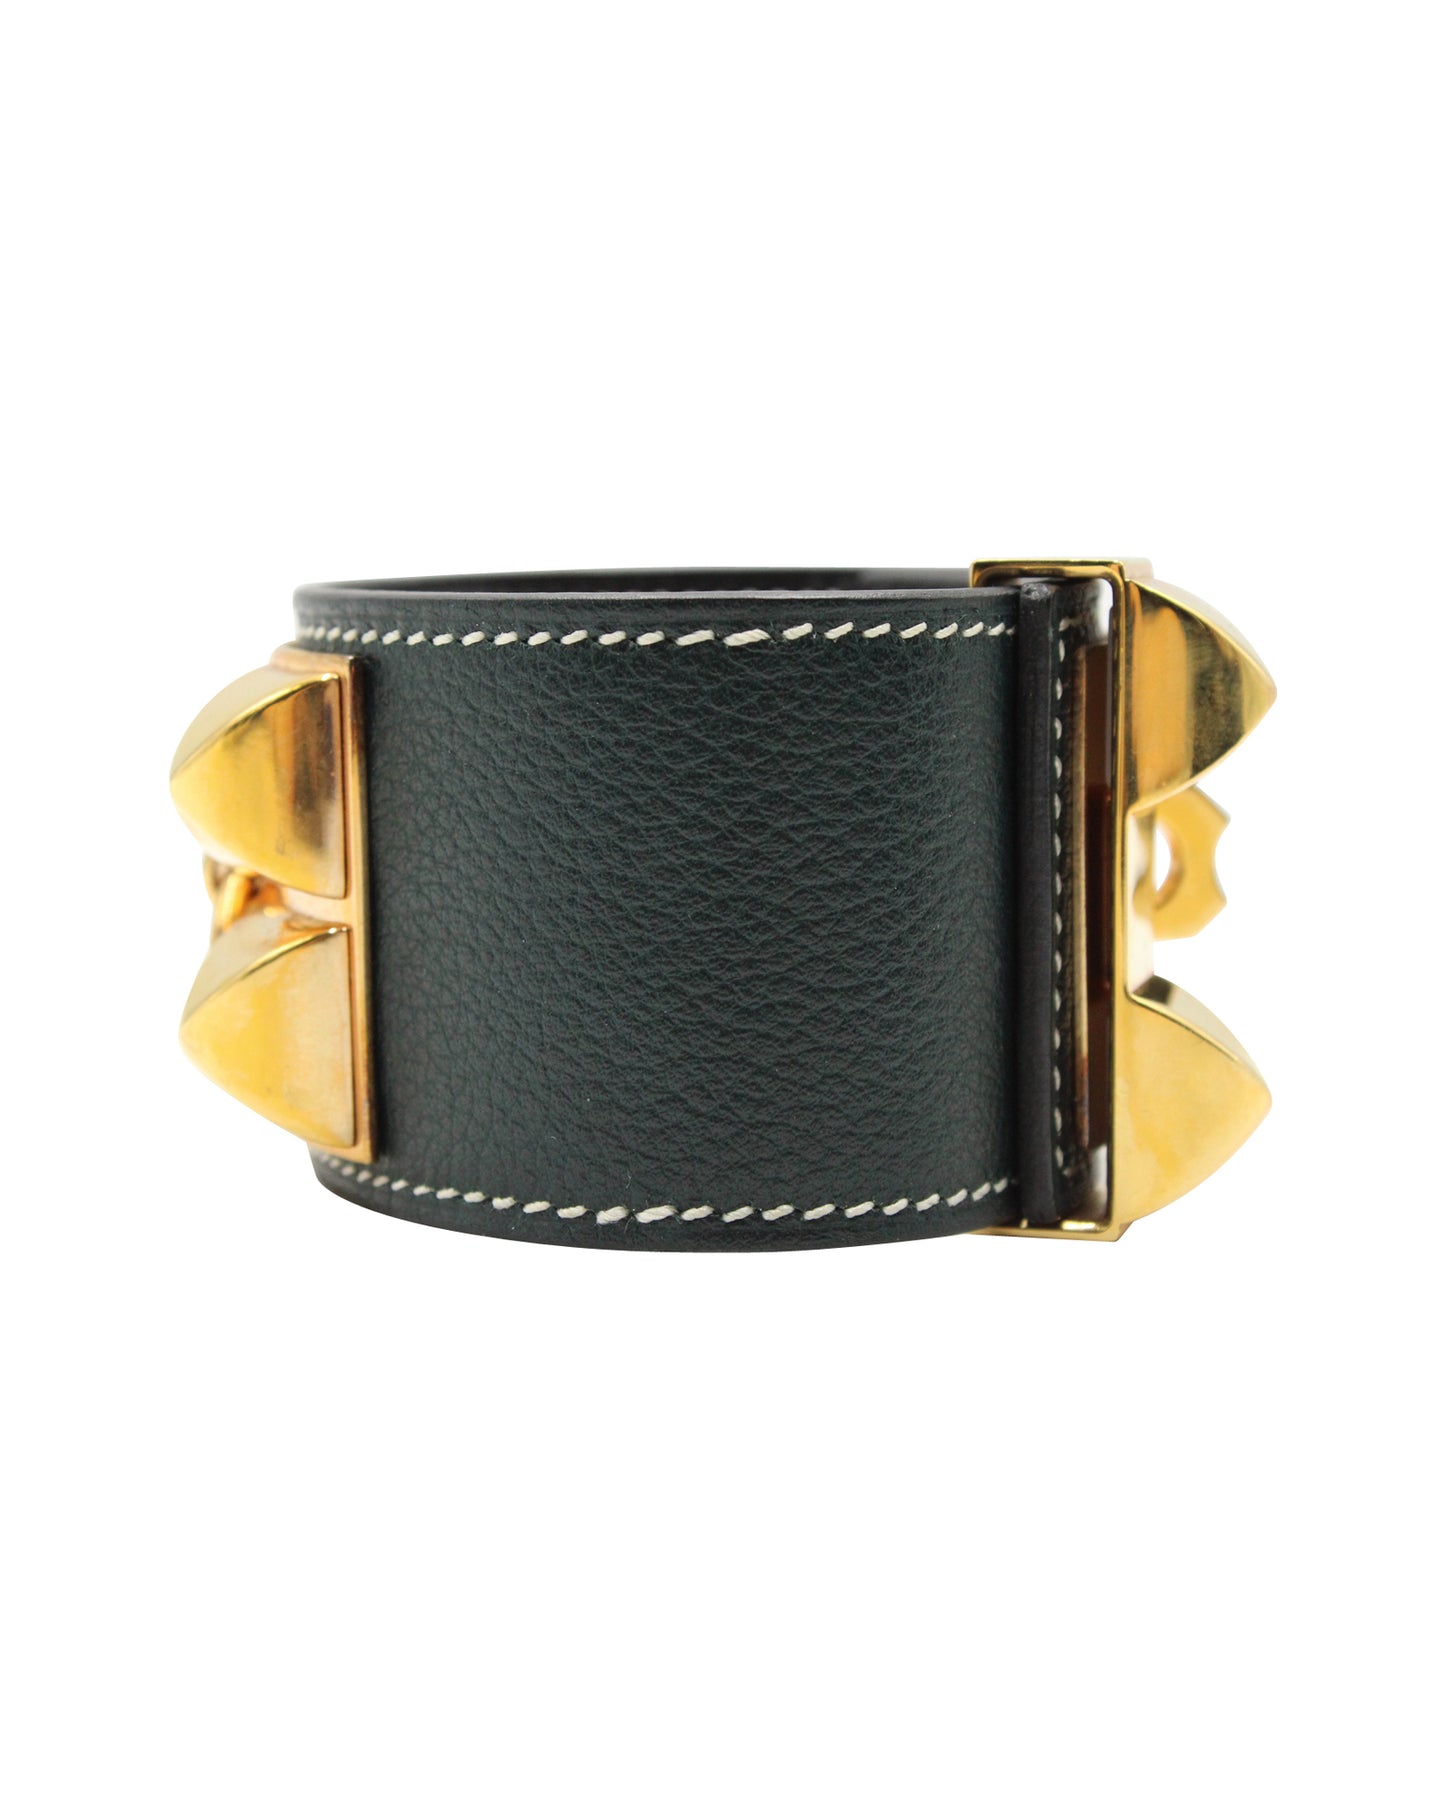 HERMÈS Collier De Chien Bracelet-Vert Cyrpres Evercolour Leather - Rose Gold Hardware